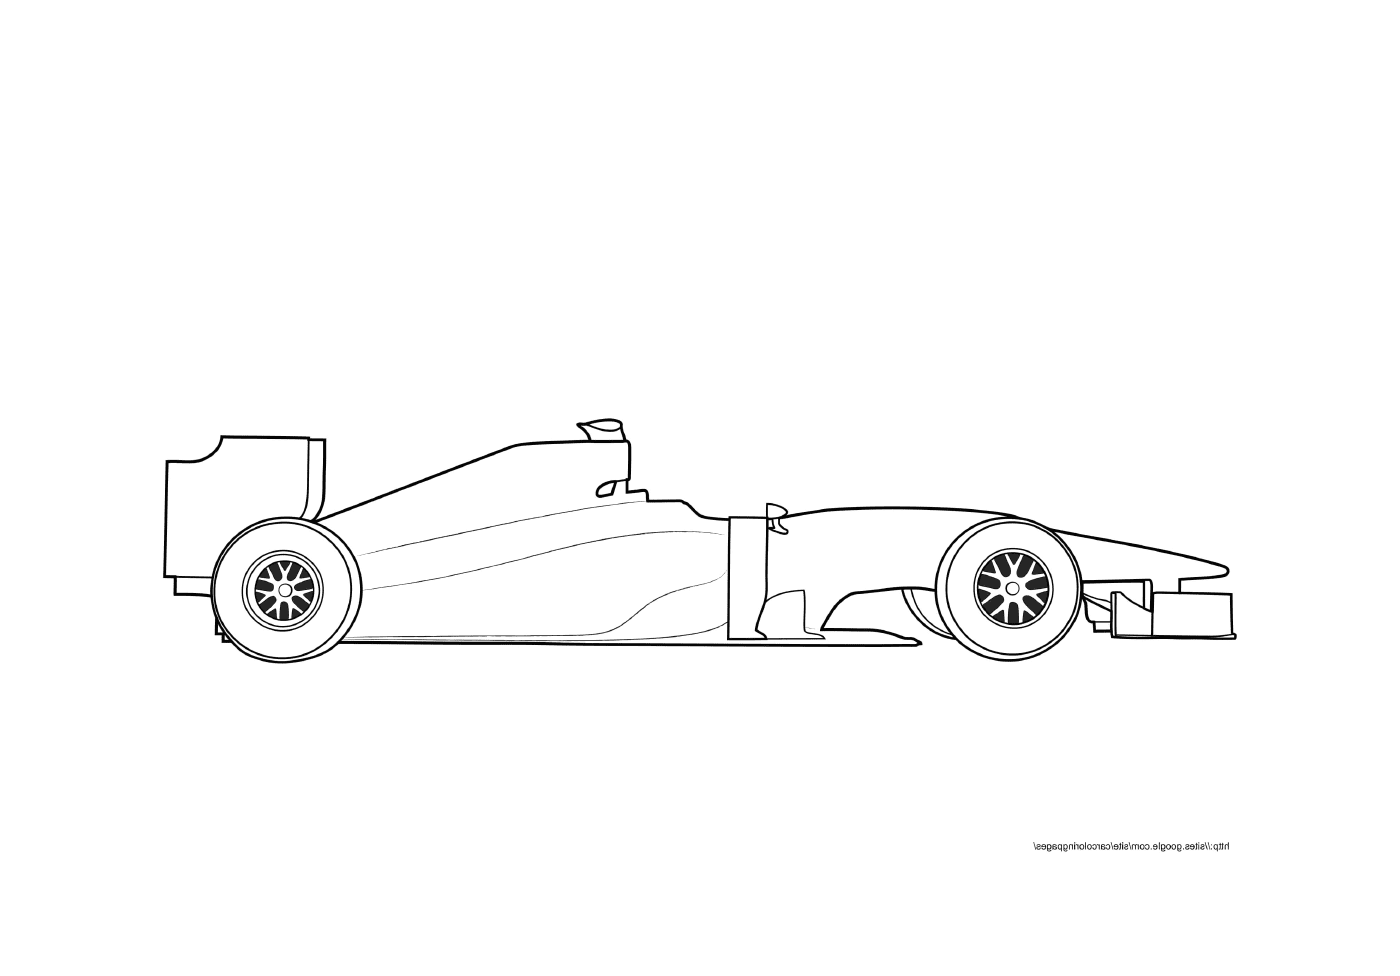  Спорт F1 Белая маркировка автомобиля 